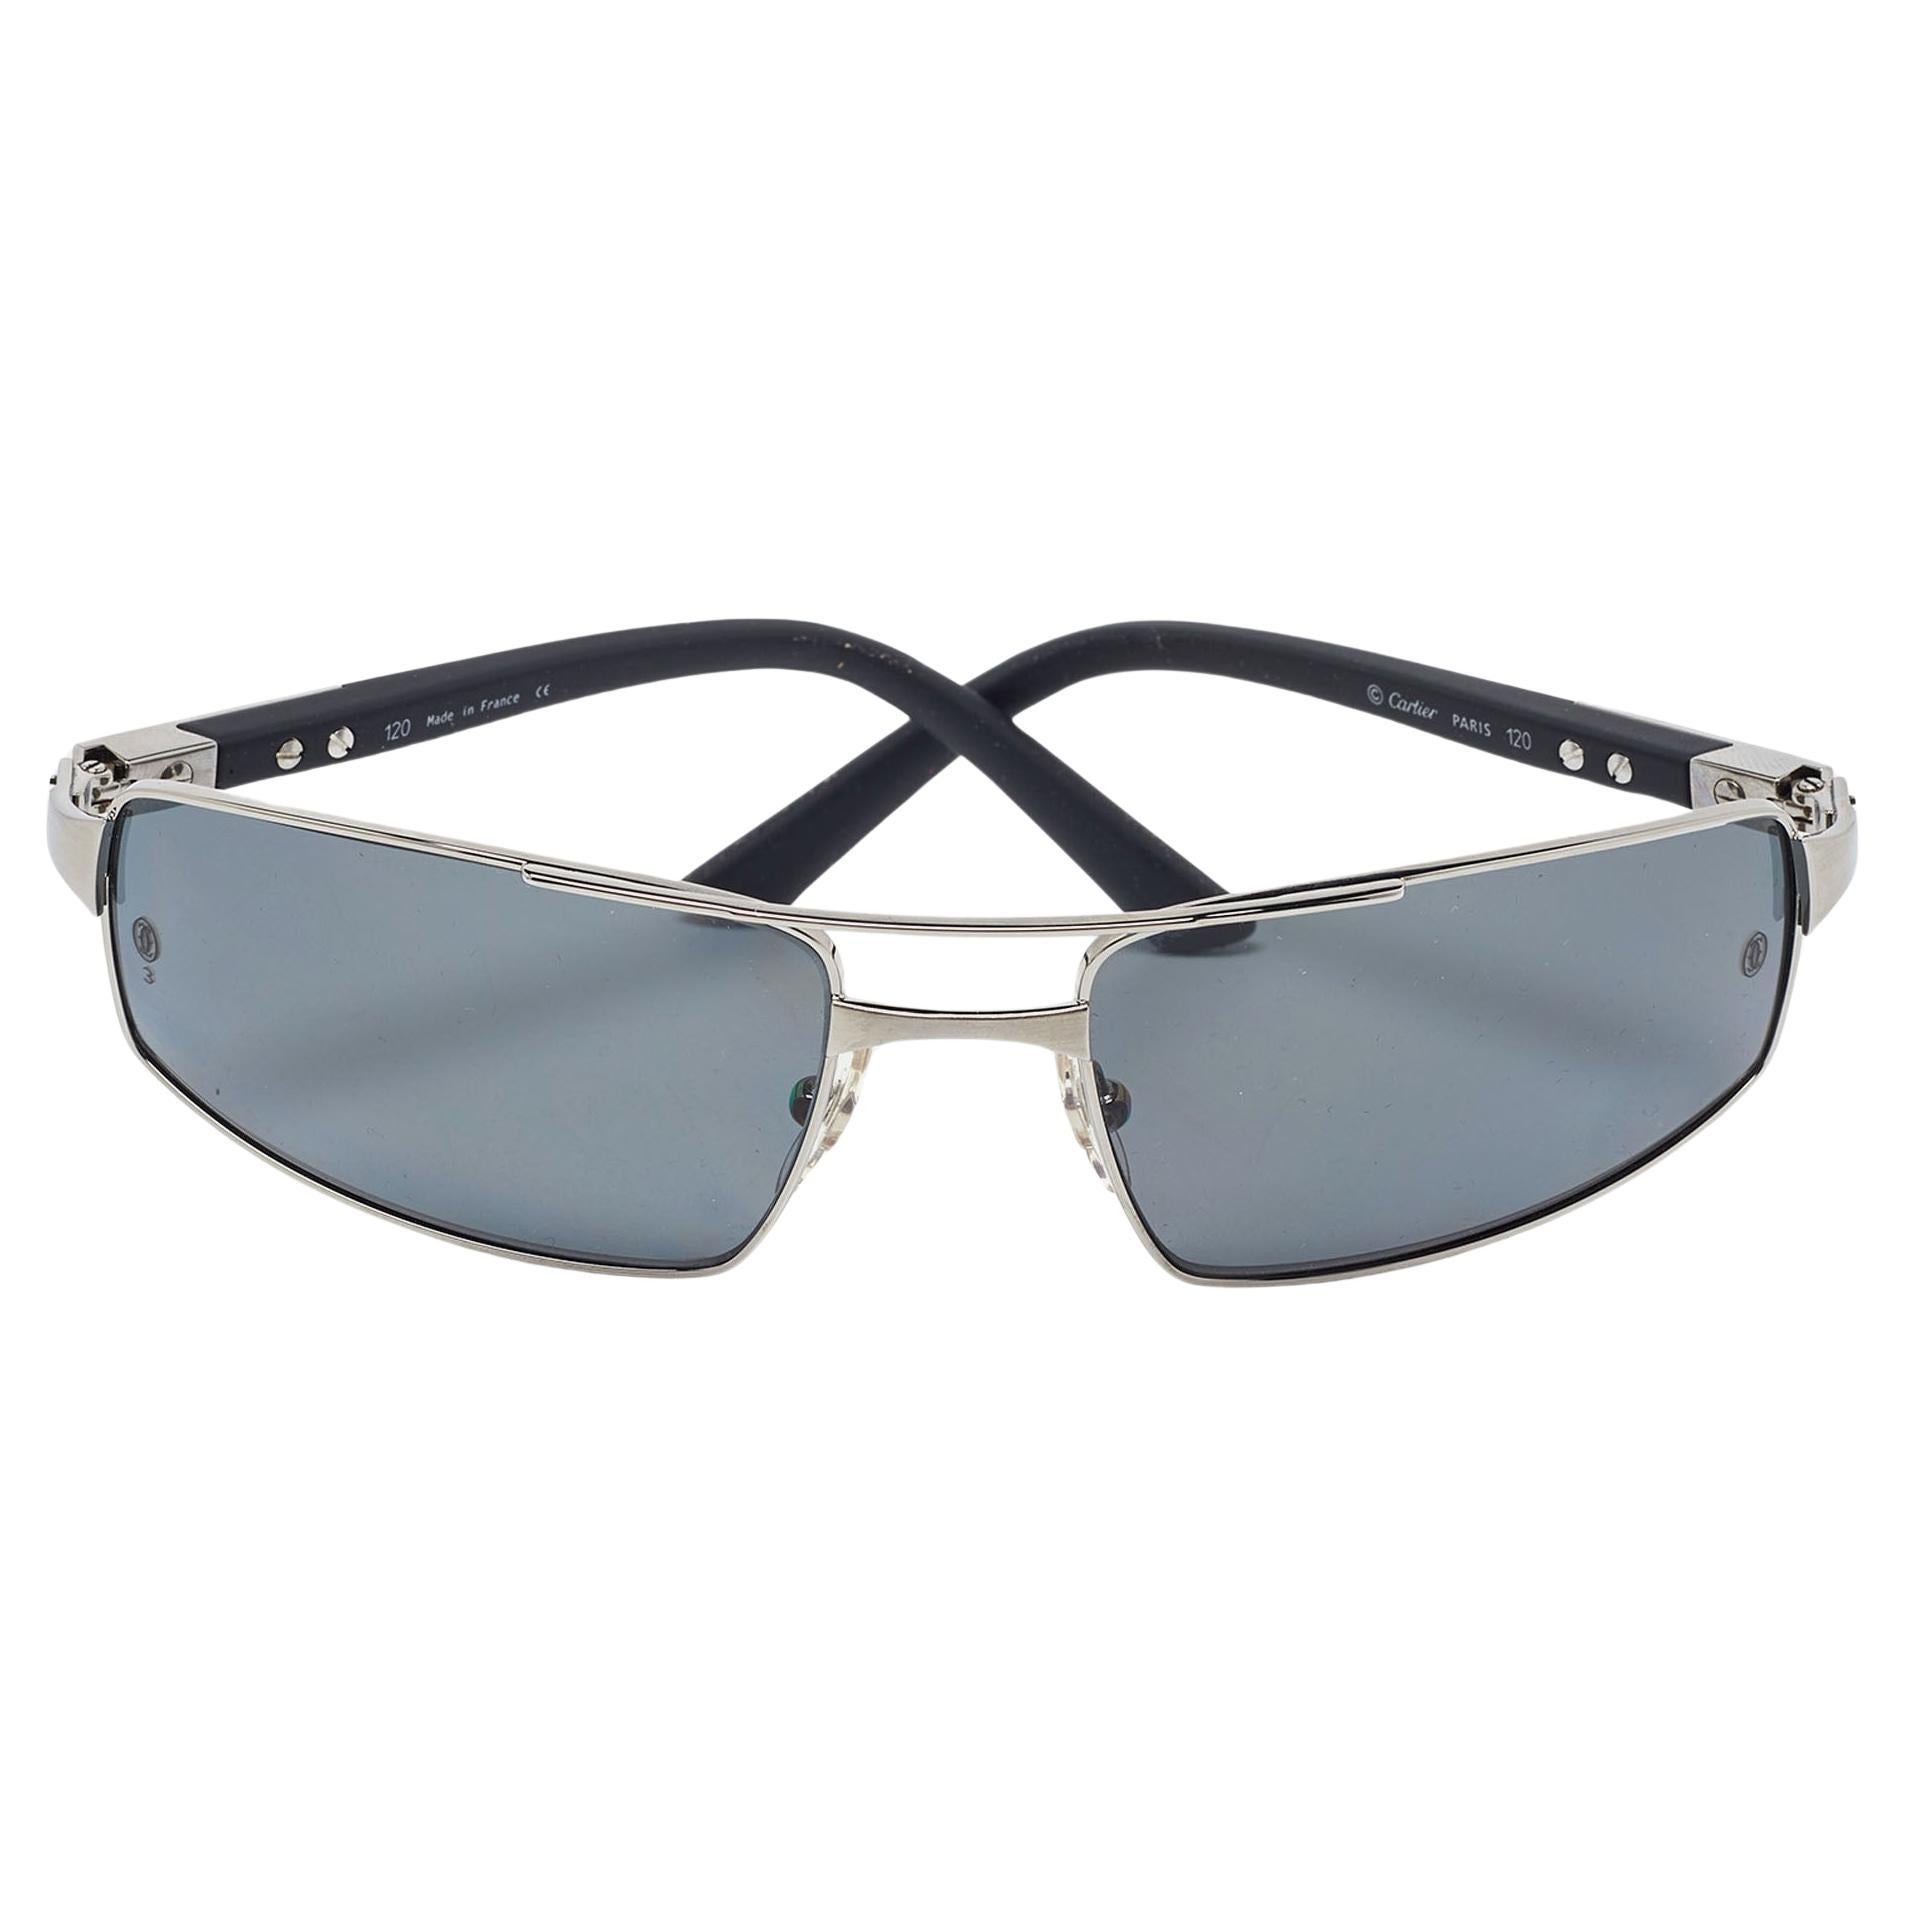 Cartier Silver Tone/Grey Santos Galaxy Rectangle Sunglasses